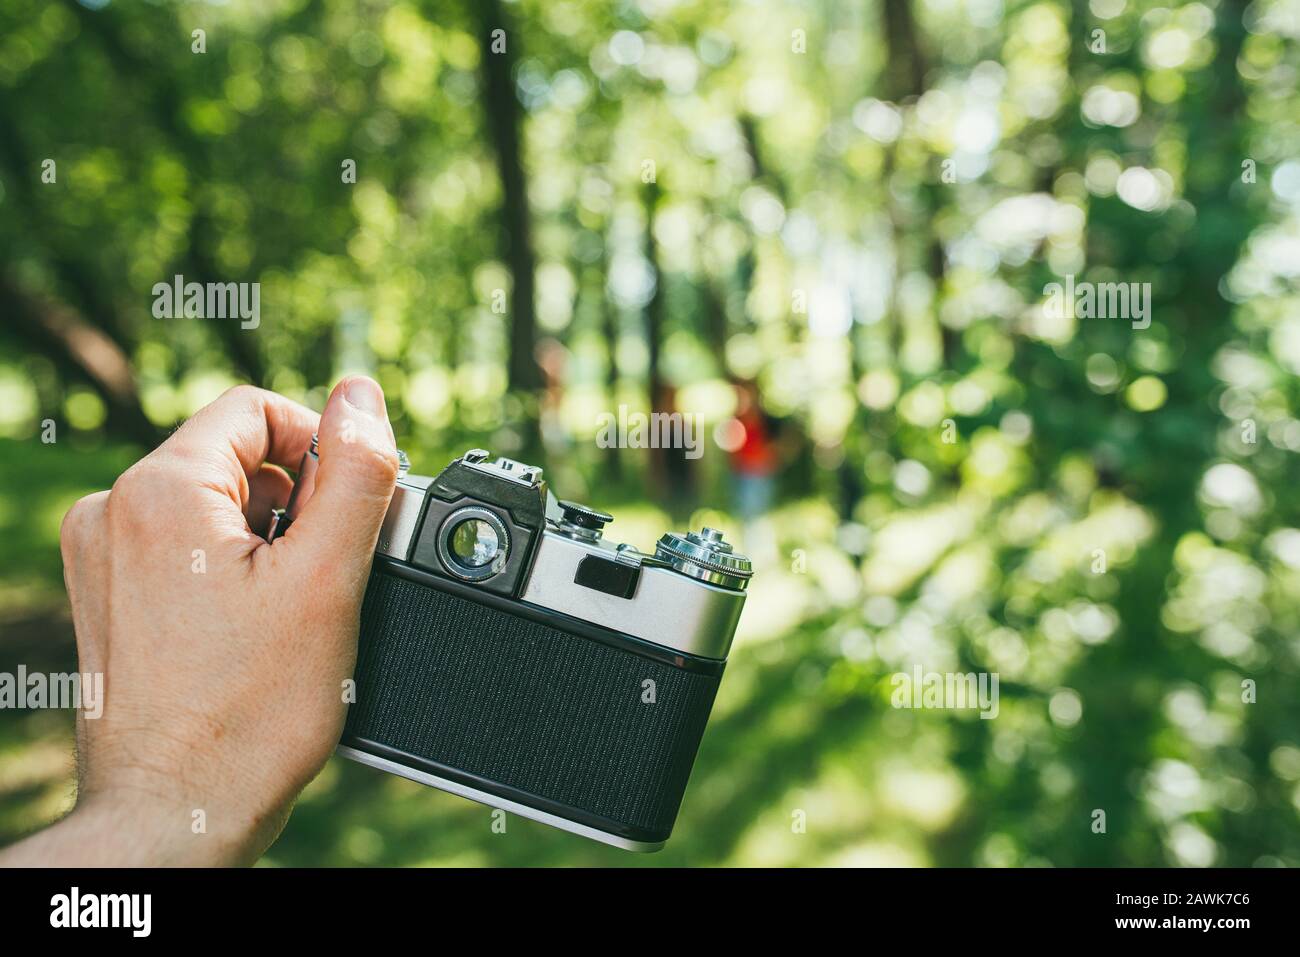 La main d'un homme tient un vieux film de caméra et photographie un paysage vert. Première personne de la vue POV Banque D'Images